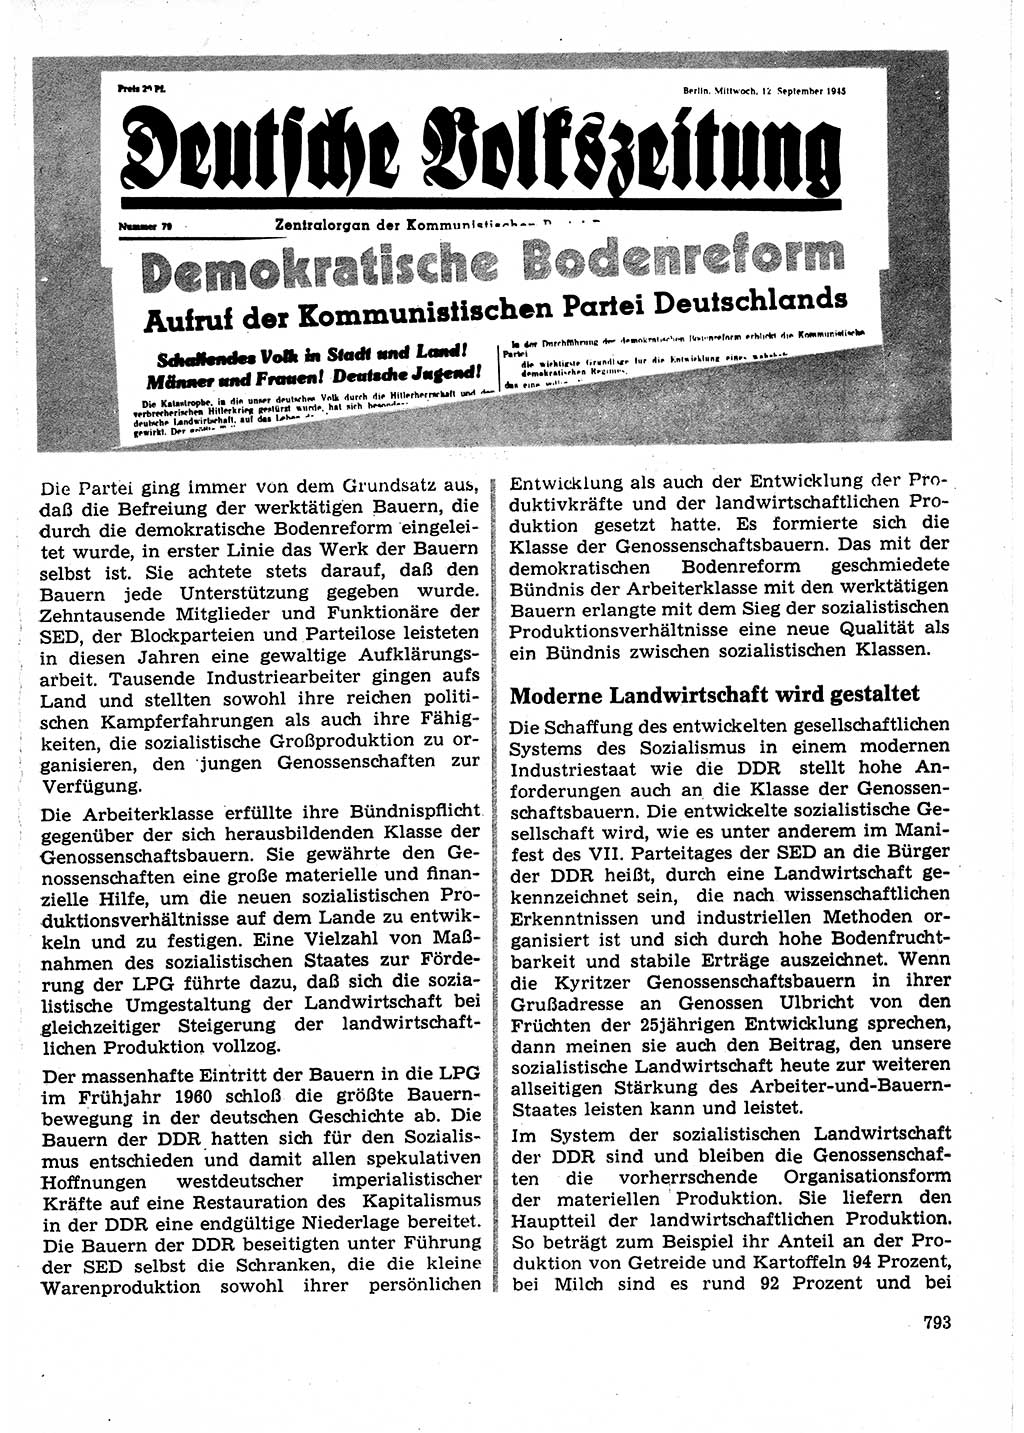 Neuer Weg (NW), Organ des Zentralkomitees (ZK) der SED (Sozialistische Einheitspartei Deutschlands) für Fragen des Parteilebens, 25. Jahrgang [Deutsche Demokratische Republik (DDR)] 1970, Seite 793 (NW ZK SED DDR 1970, S. 793)